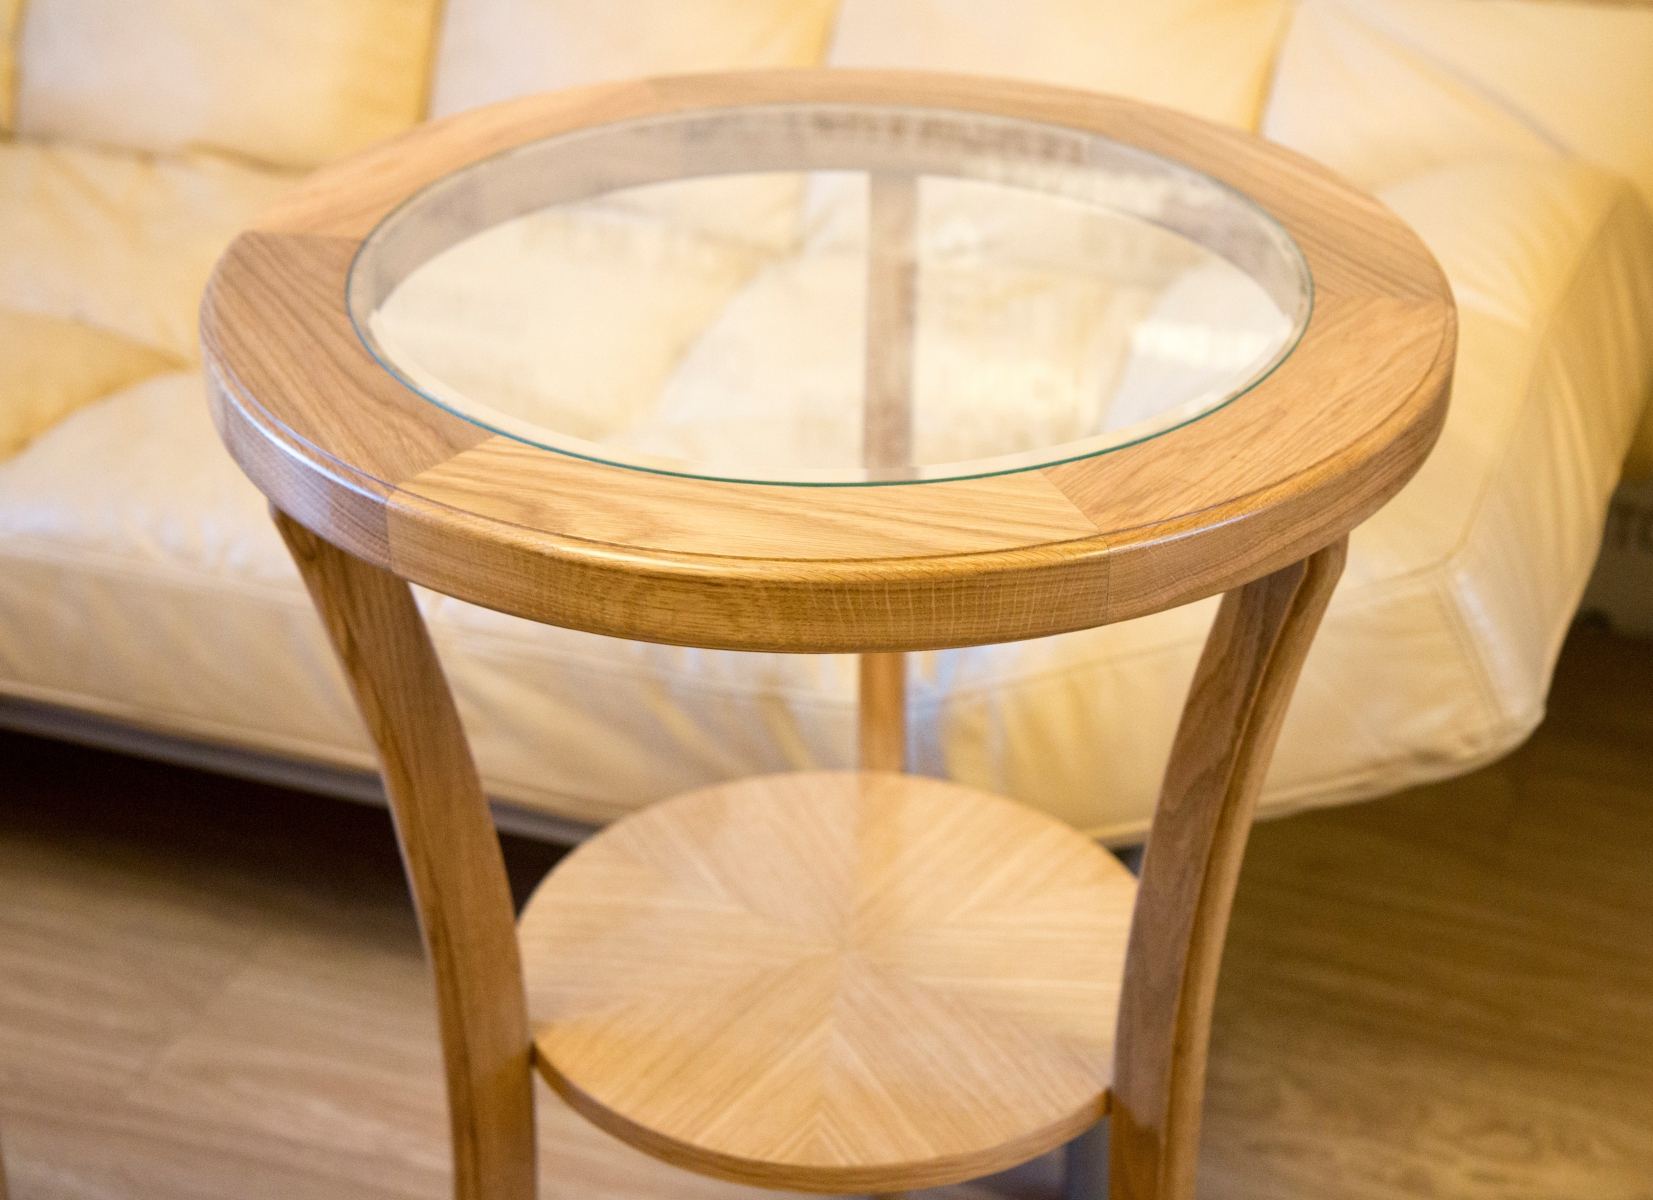 Столик из дерева круглый. Круглый журнальный столик из дерева. Кофейный столик из дерева круглый. Круглый журнальный столик из массива. Журнальный столик круглый деревянный.